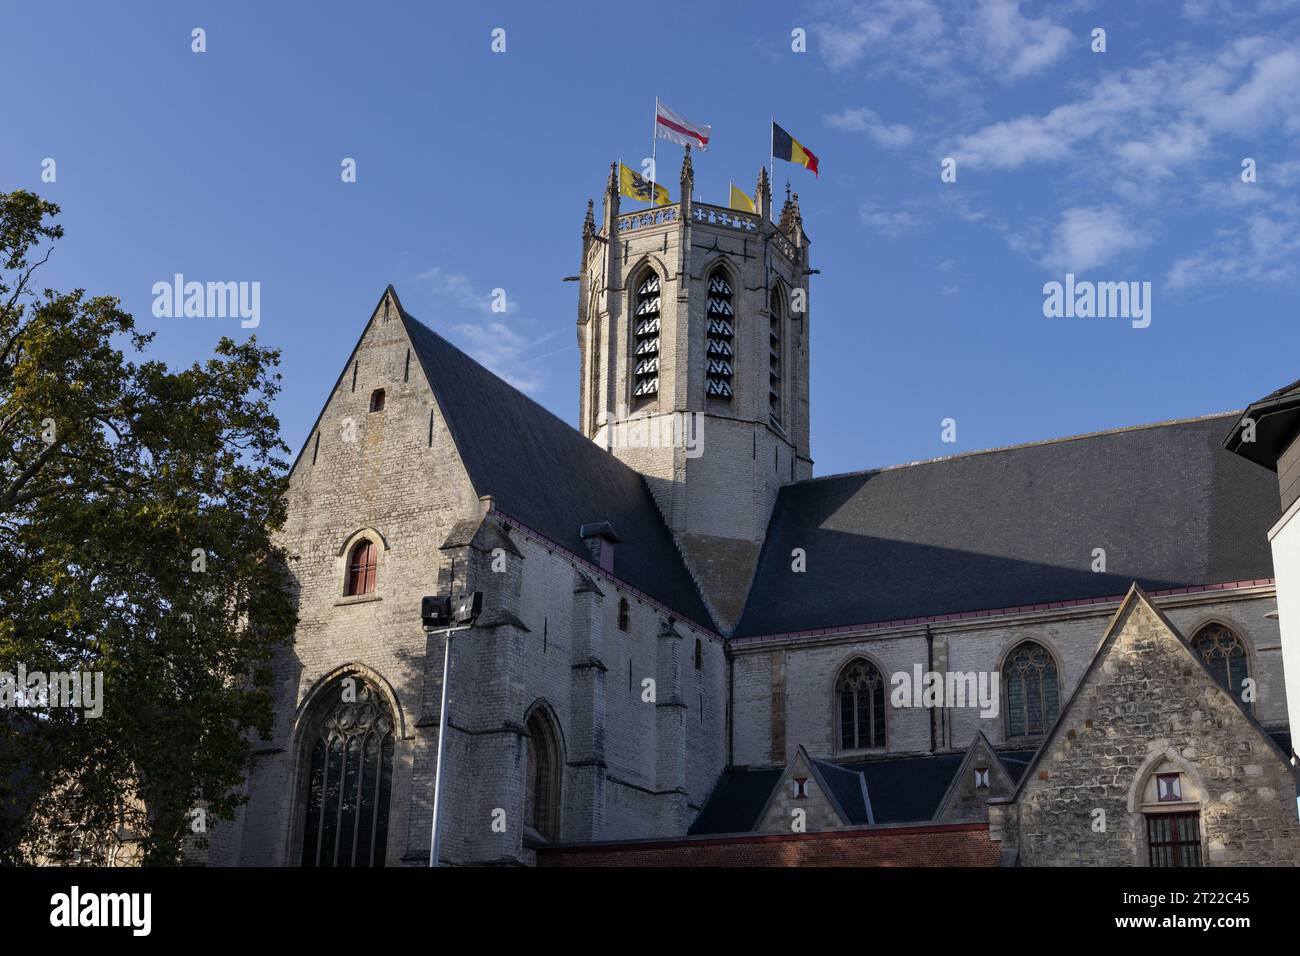 Vue extérieure de notre église catholique Ladys à Dendermonde, Flandre orientale, Belgique. L'église de style gothique a été construite entre le 13e et le 15e siècle Banque D'Images